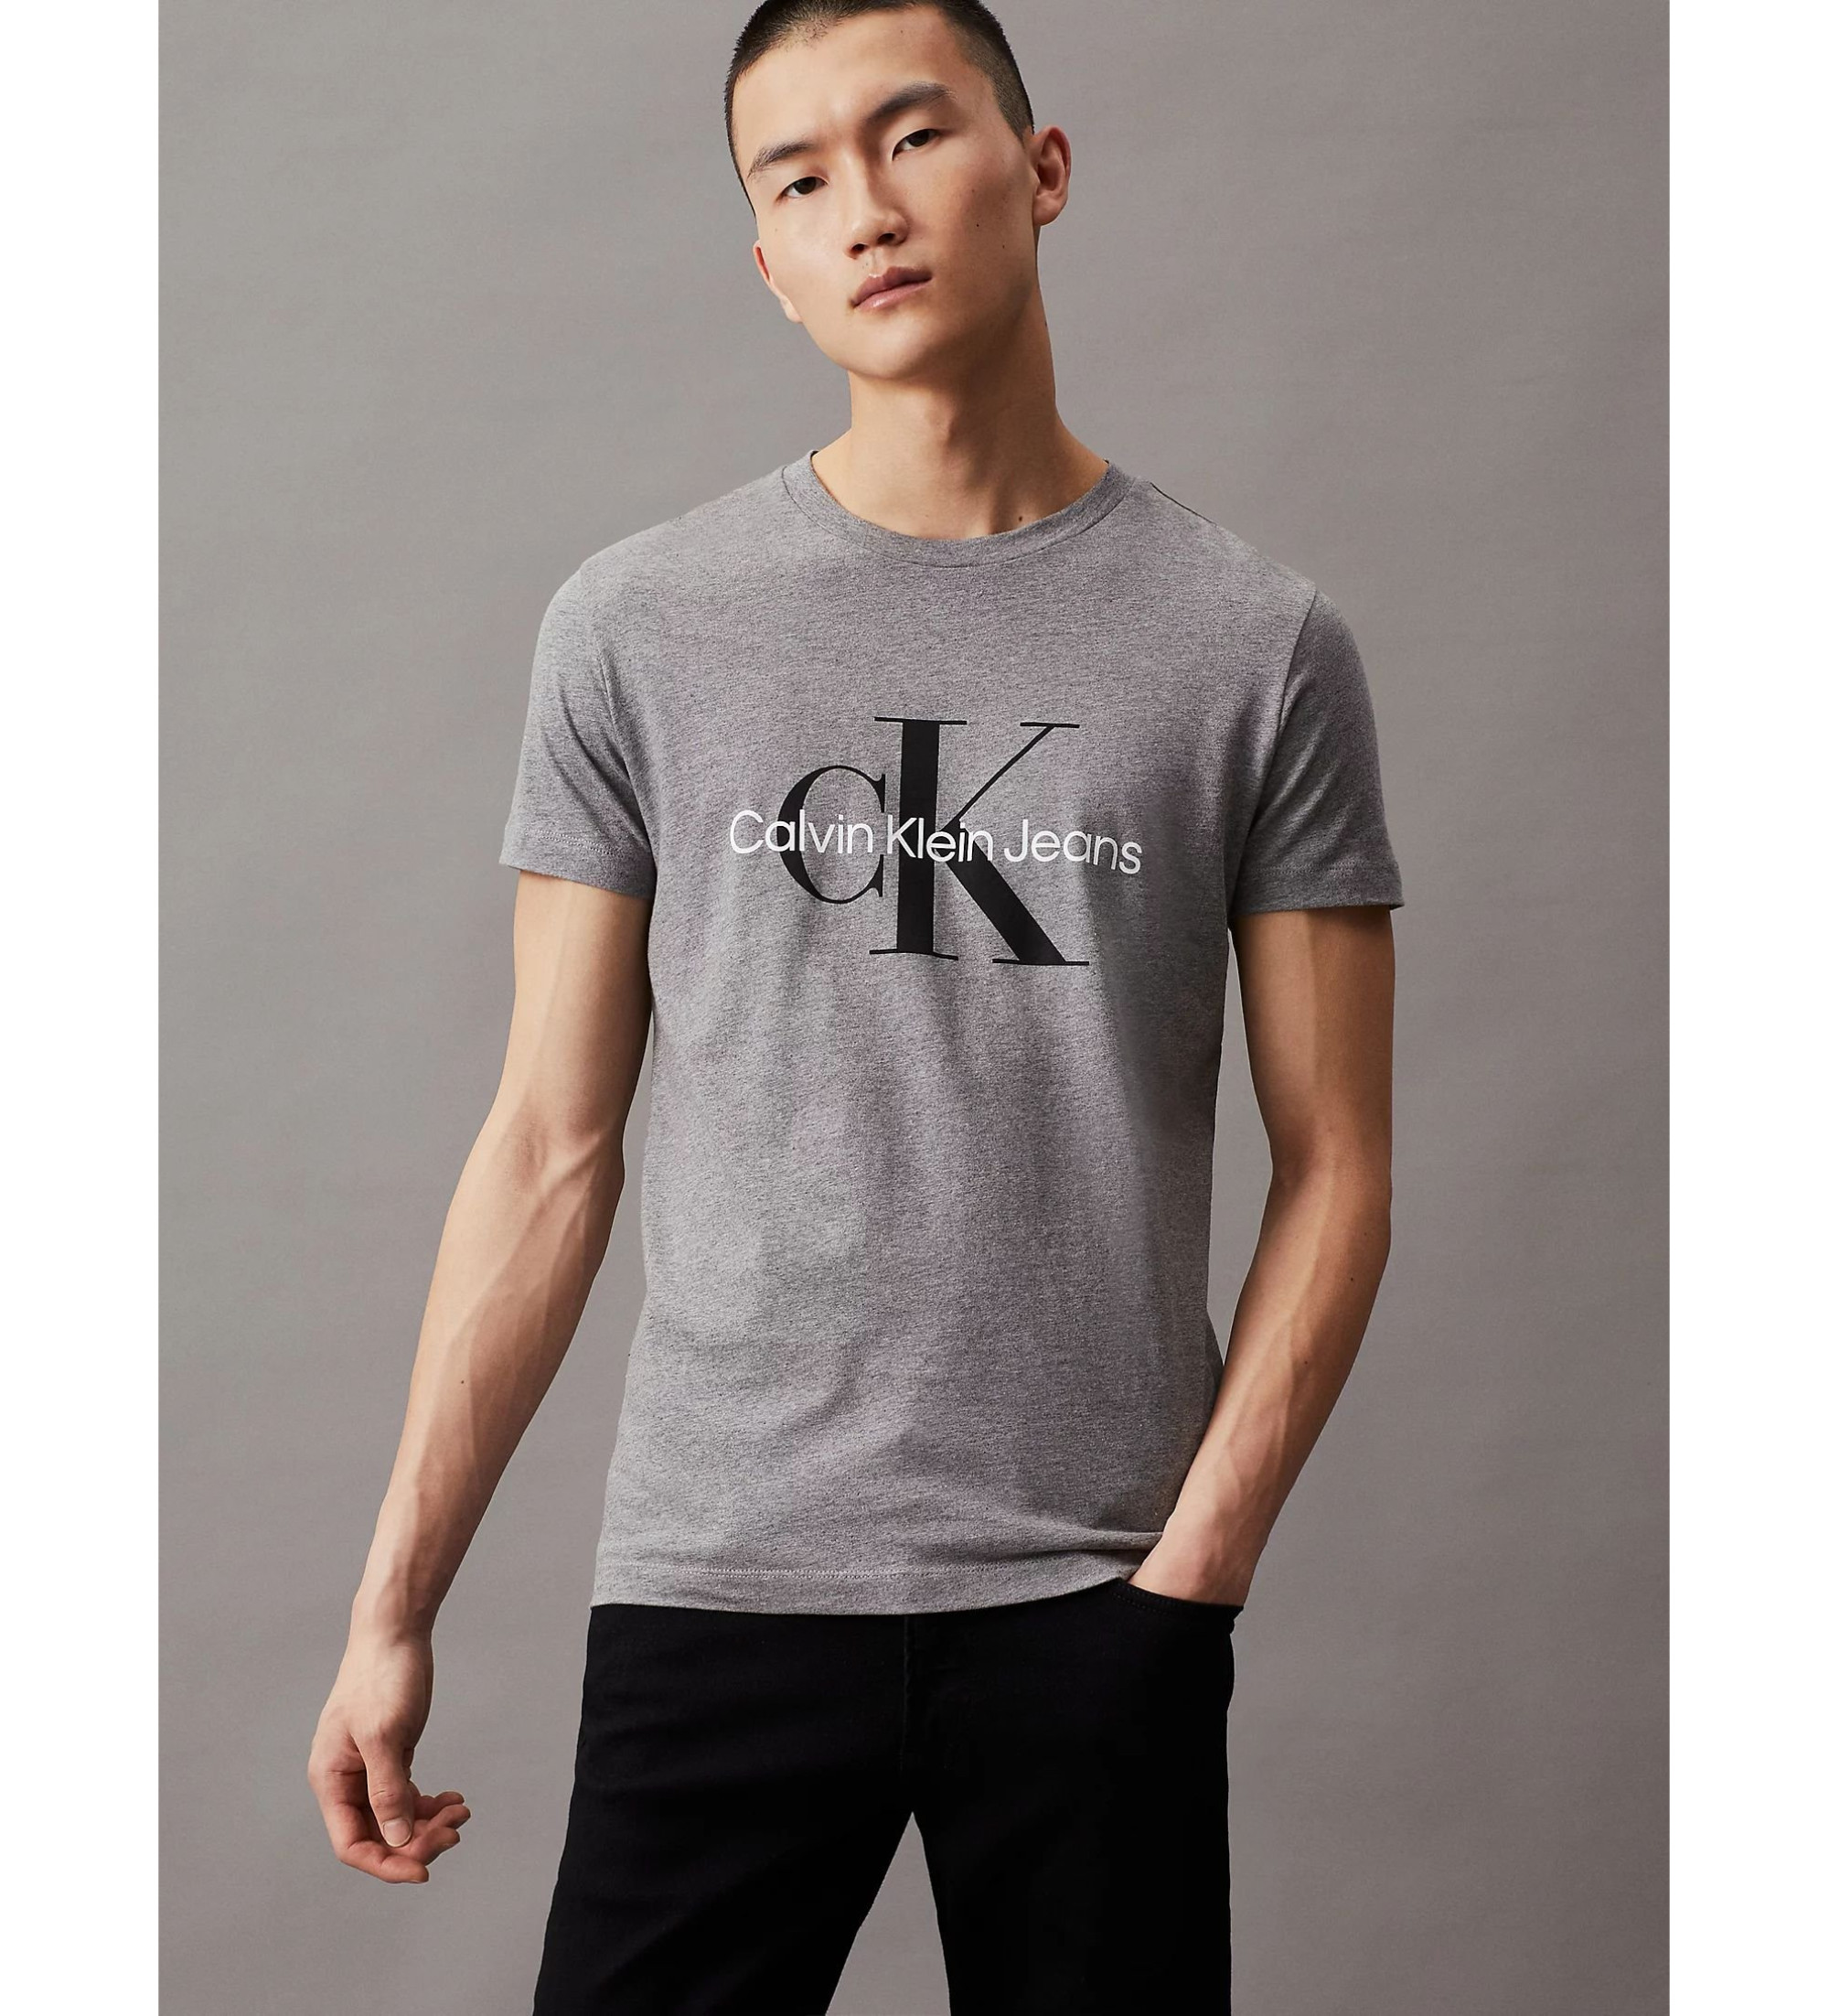 Calvin Klein - Markenschuhe Accessoires Esdemarca - und Schuhe, grau Core für und Slim Geschäft T-shirt Mode Monogram Jeans Markenturnschuhe